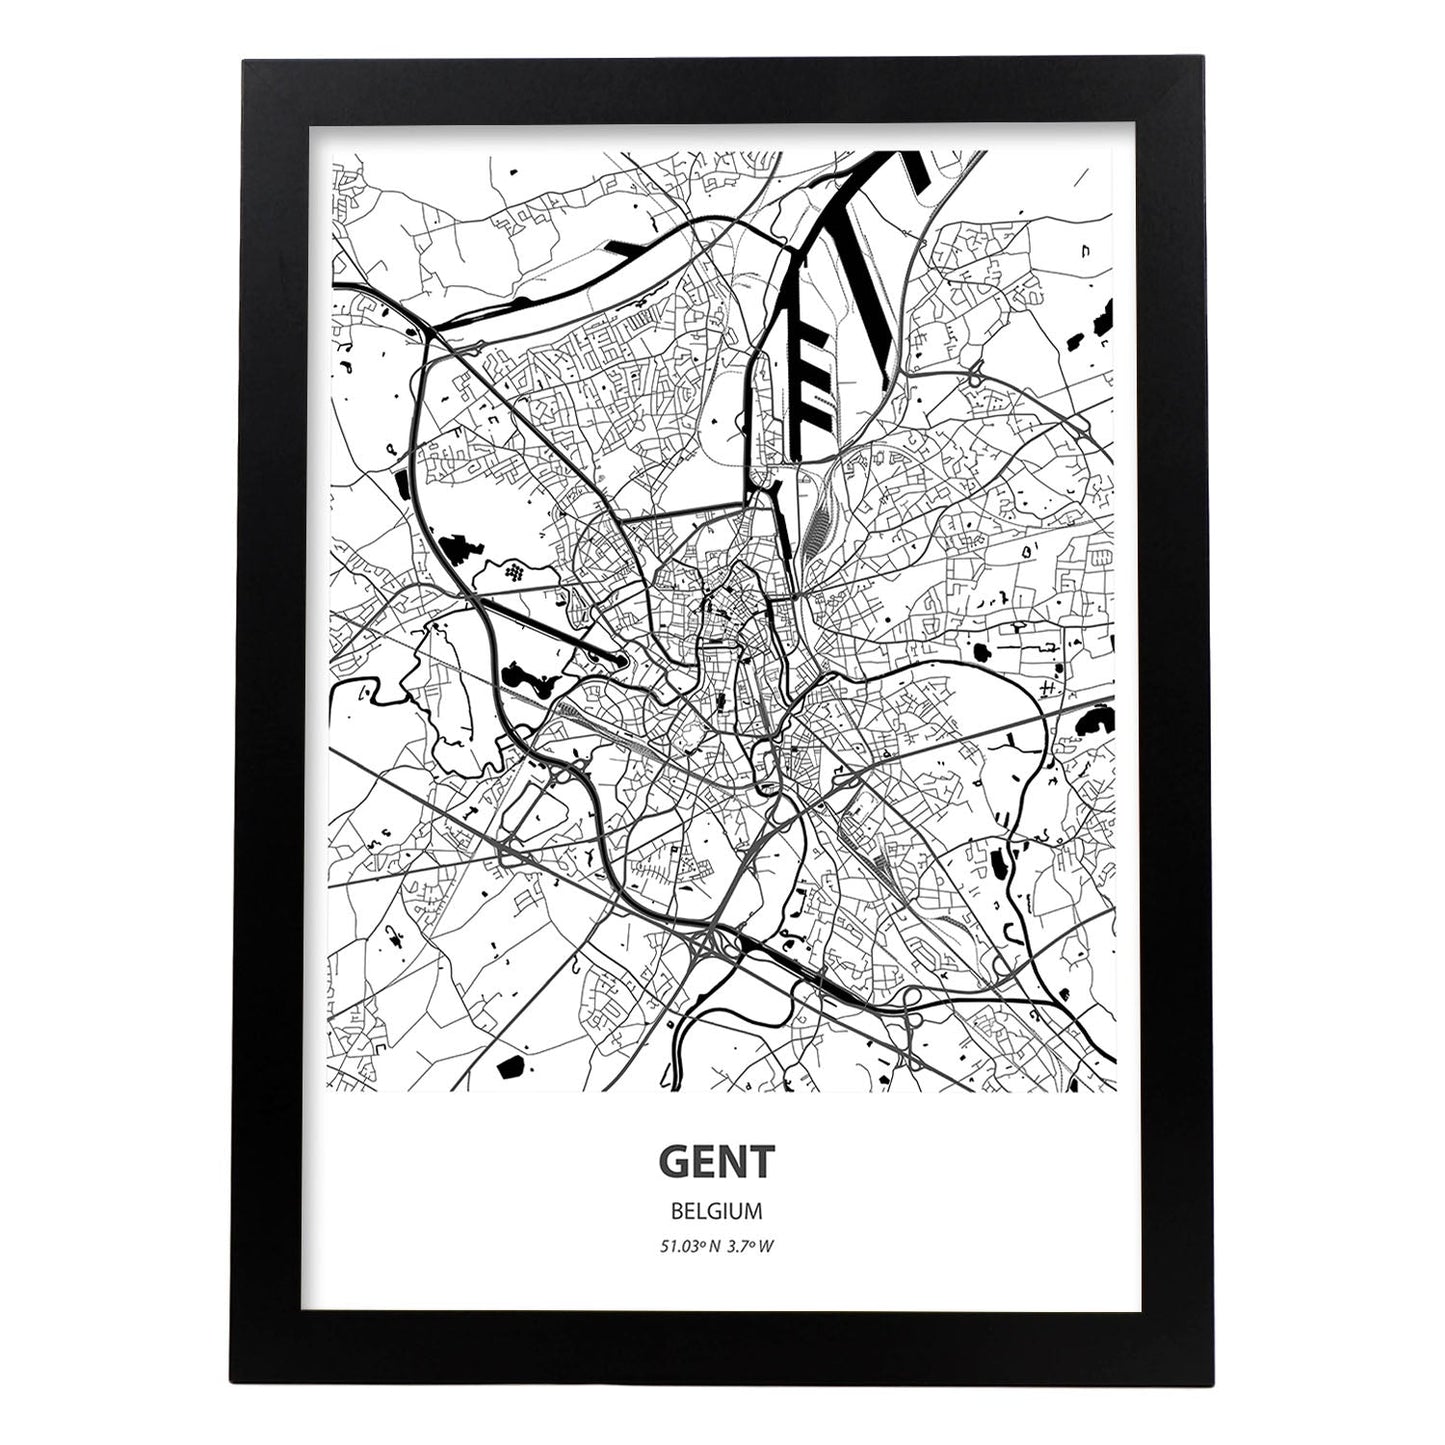 Poster con mapa de Gent - Belgica. Láminas de ciudades de Holanda y Bélgica con mares y ríos en color negro.-Artwork-Nacnic-A4-Marco Negro-Nacnic Estudio SL